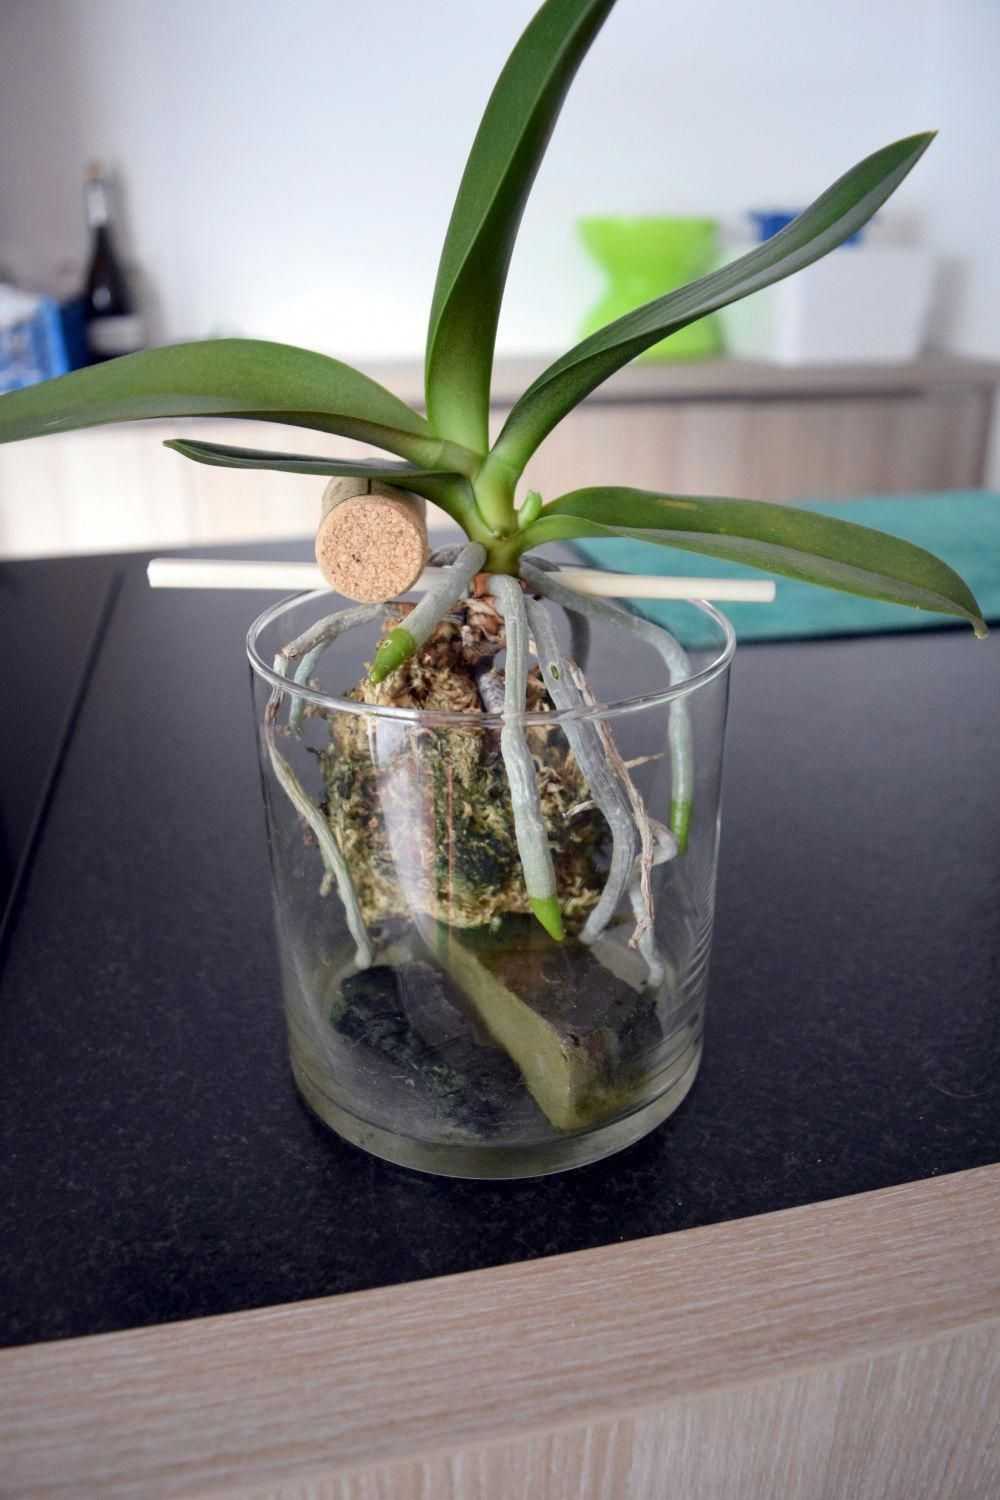 Характеристики синей орхидеи — какие существуют сорта Правила посадки и ухода за синей орхидеей Способы размножения, профилактика заболеваний и вредителей